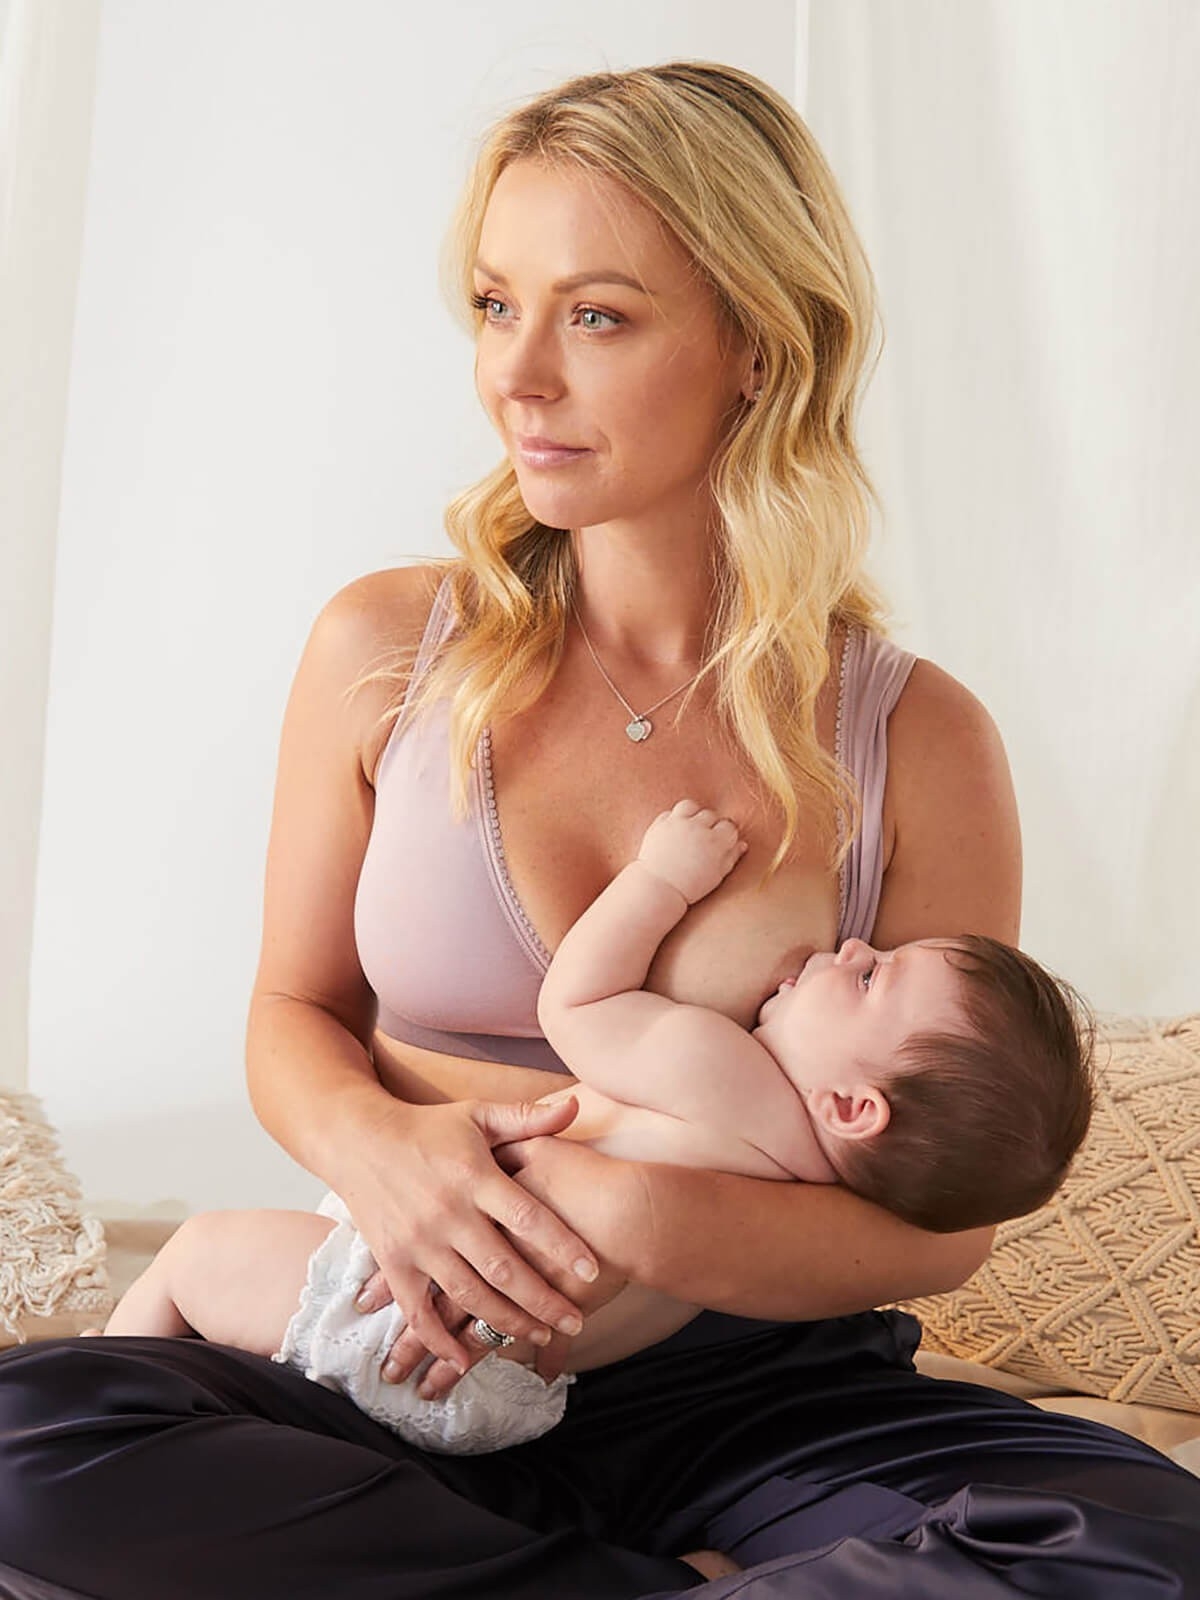  HTDZDX Women Maternity Breastfeeding Bra Sleep Nursing